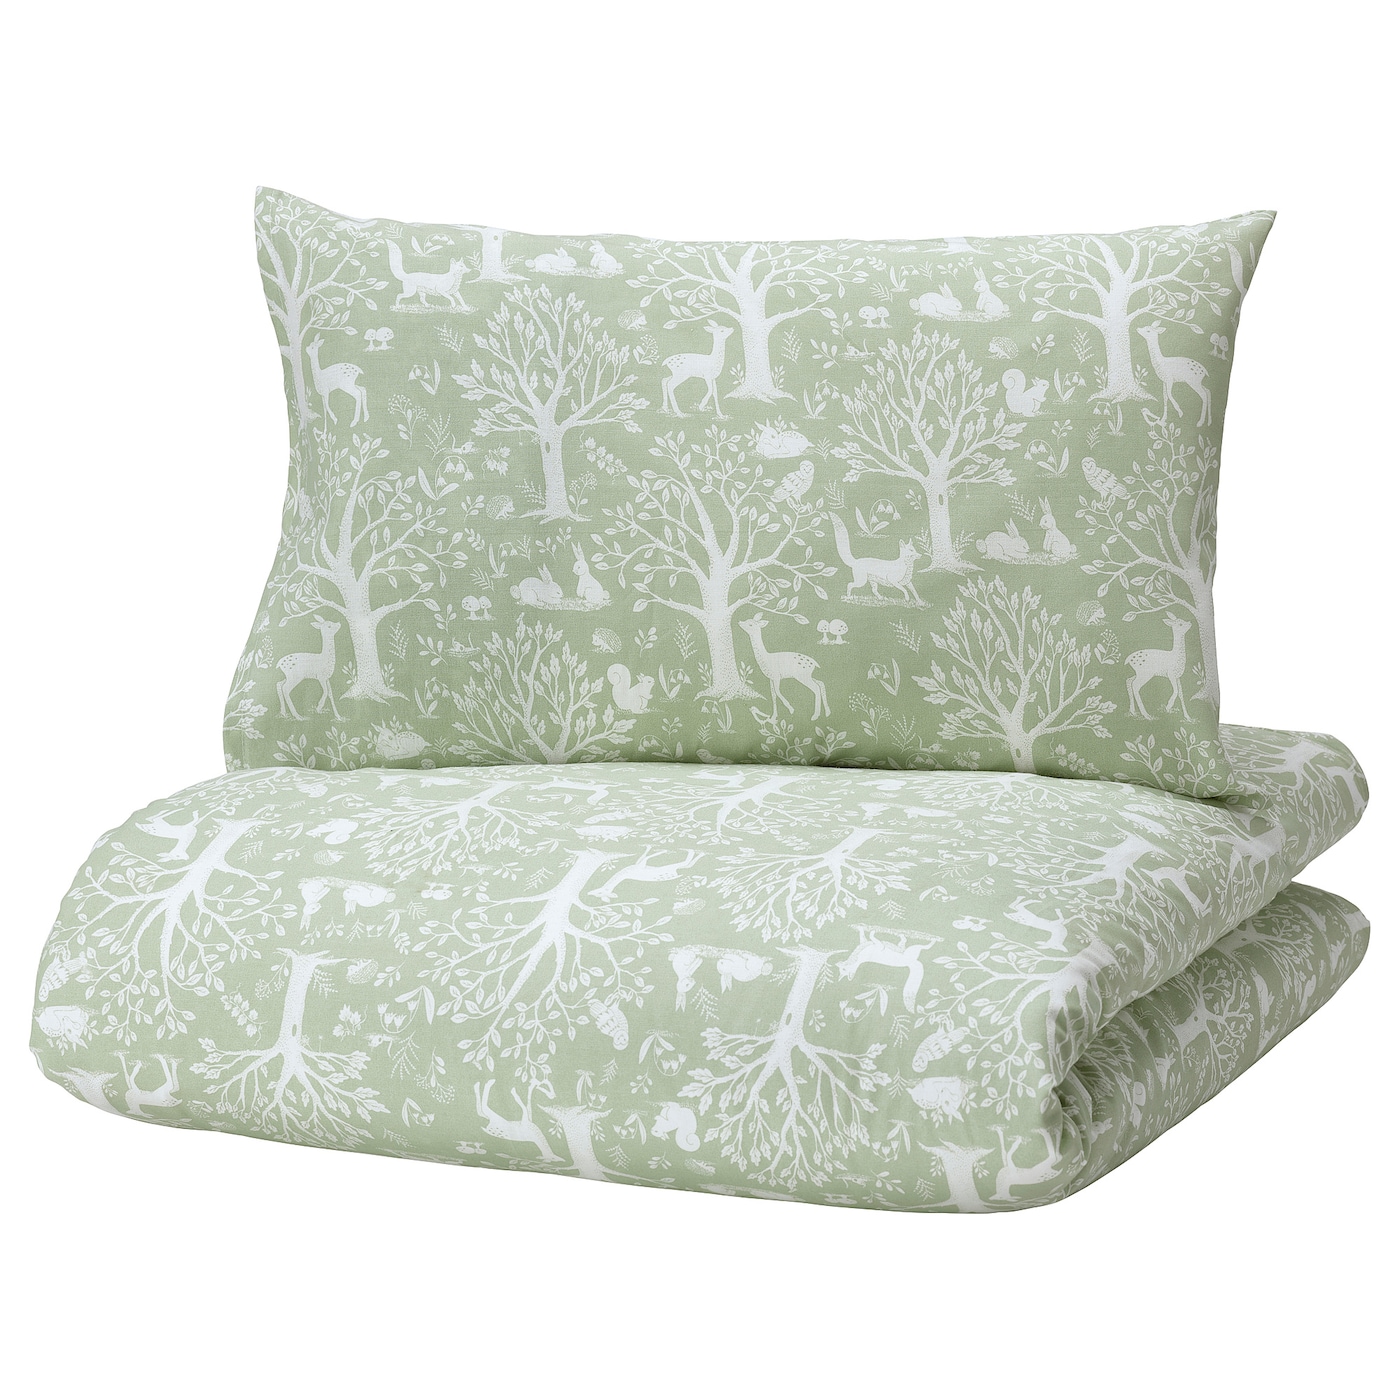 Пододеяльник и наволочка для детской кроватки - TROLLDOM  IKEA/ ТРОЛЛДОМ ИКЕА,  110x125/35x55 см, зеленый